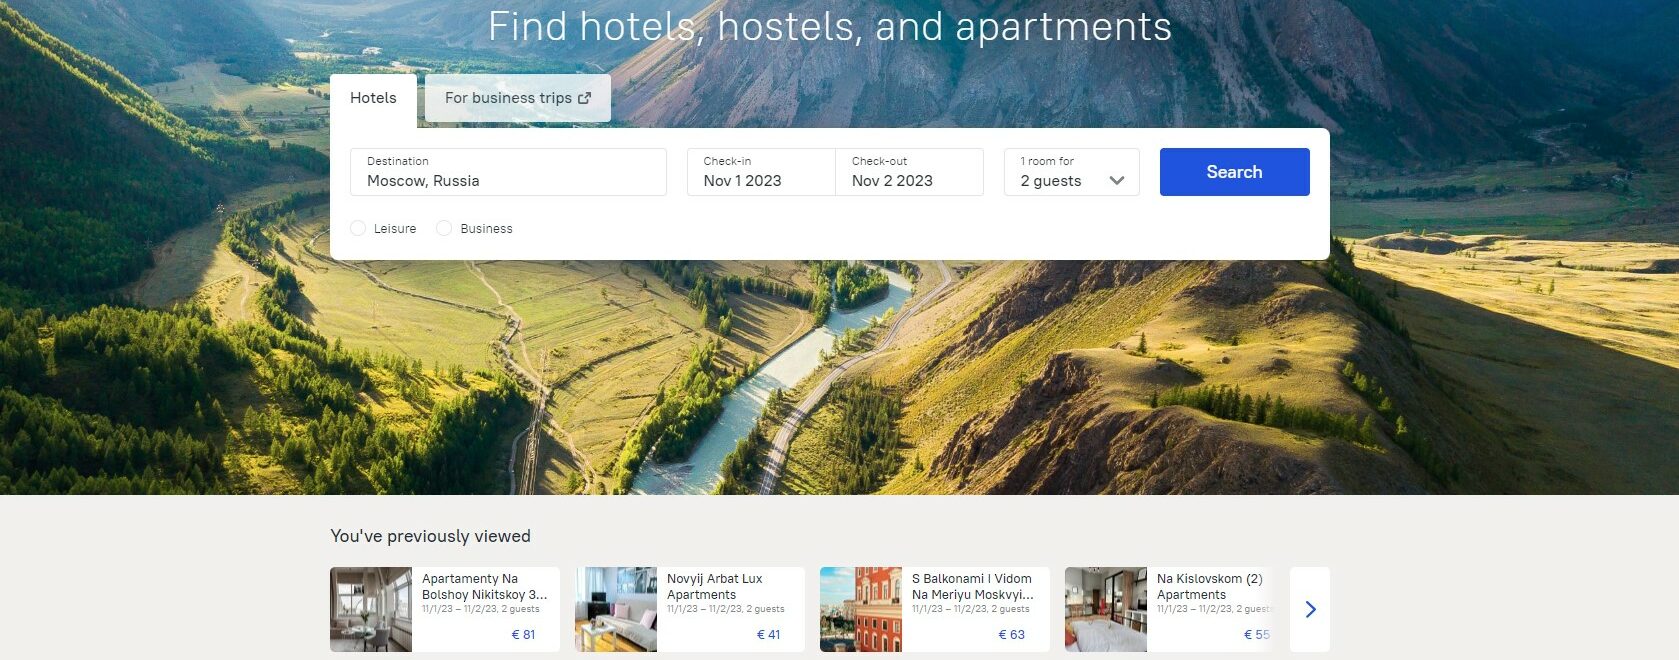 Sito web di Ostrovok - Alternativa a booking e airbnb - Sanzioni di guerra in Ucraina